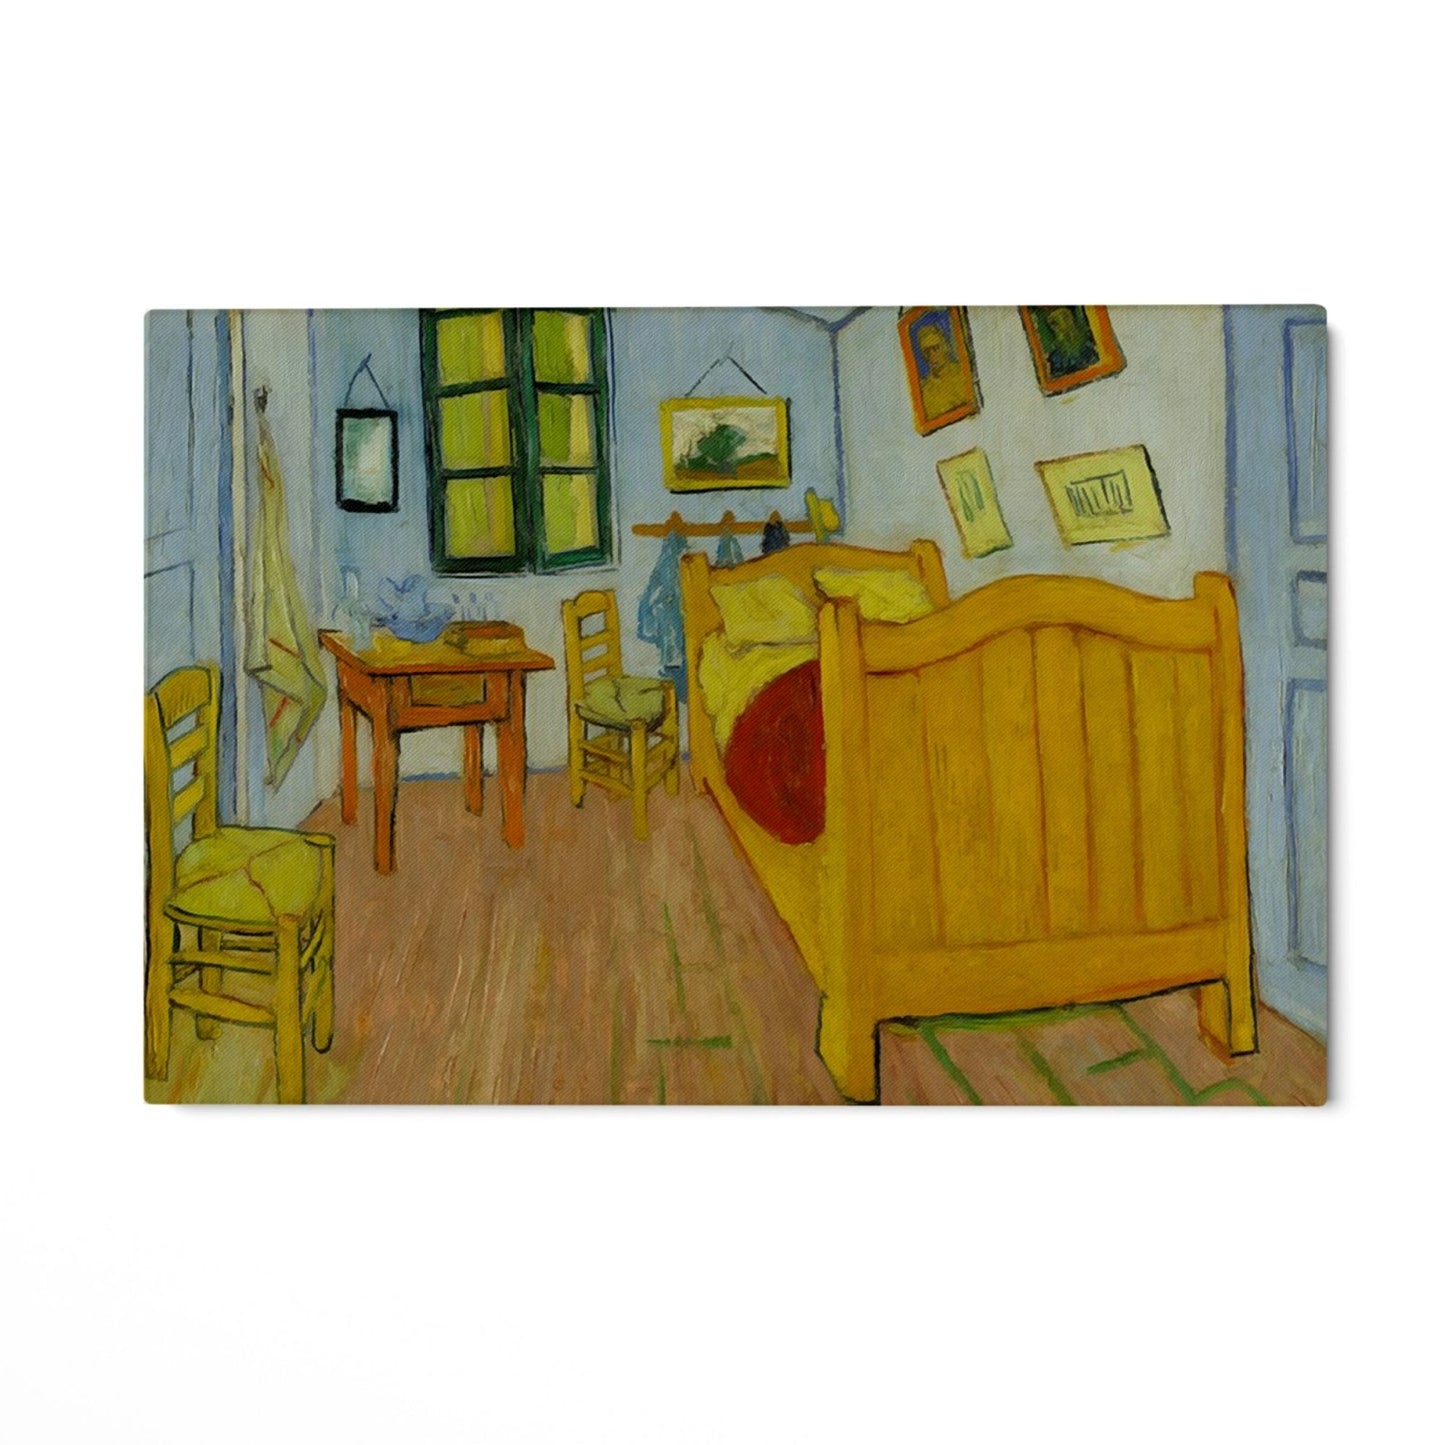 Slaapkamer in Arles, Vincent van Gogh